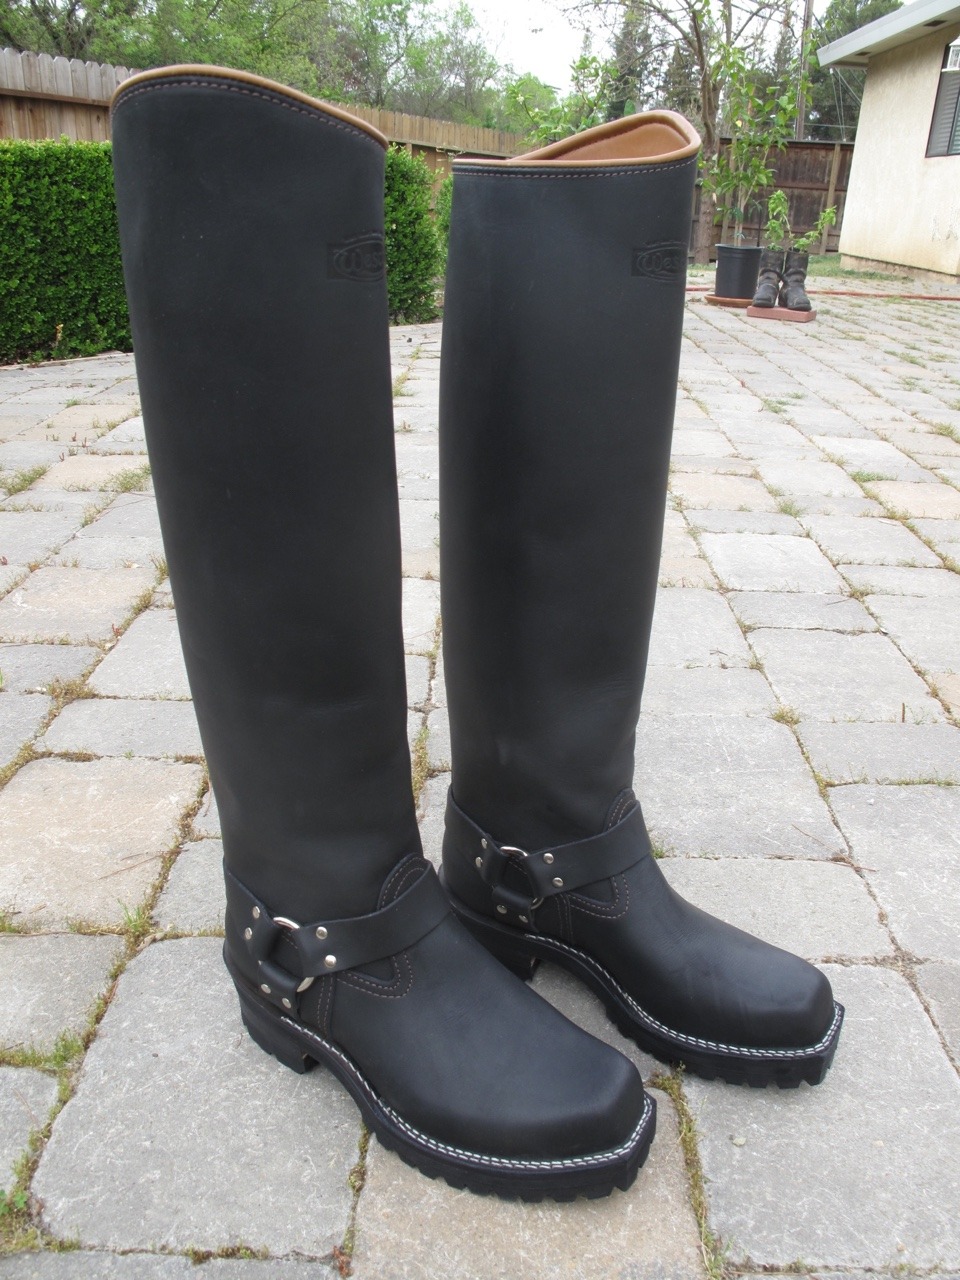 Big Black Boots — Wesco riding harness - Big Black Boots